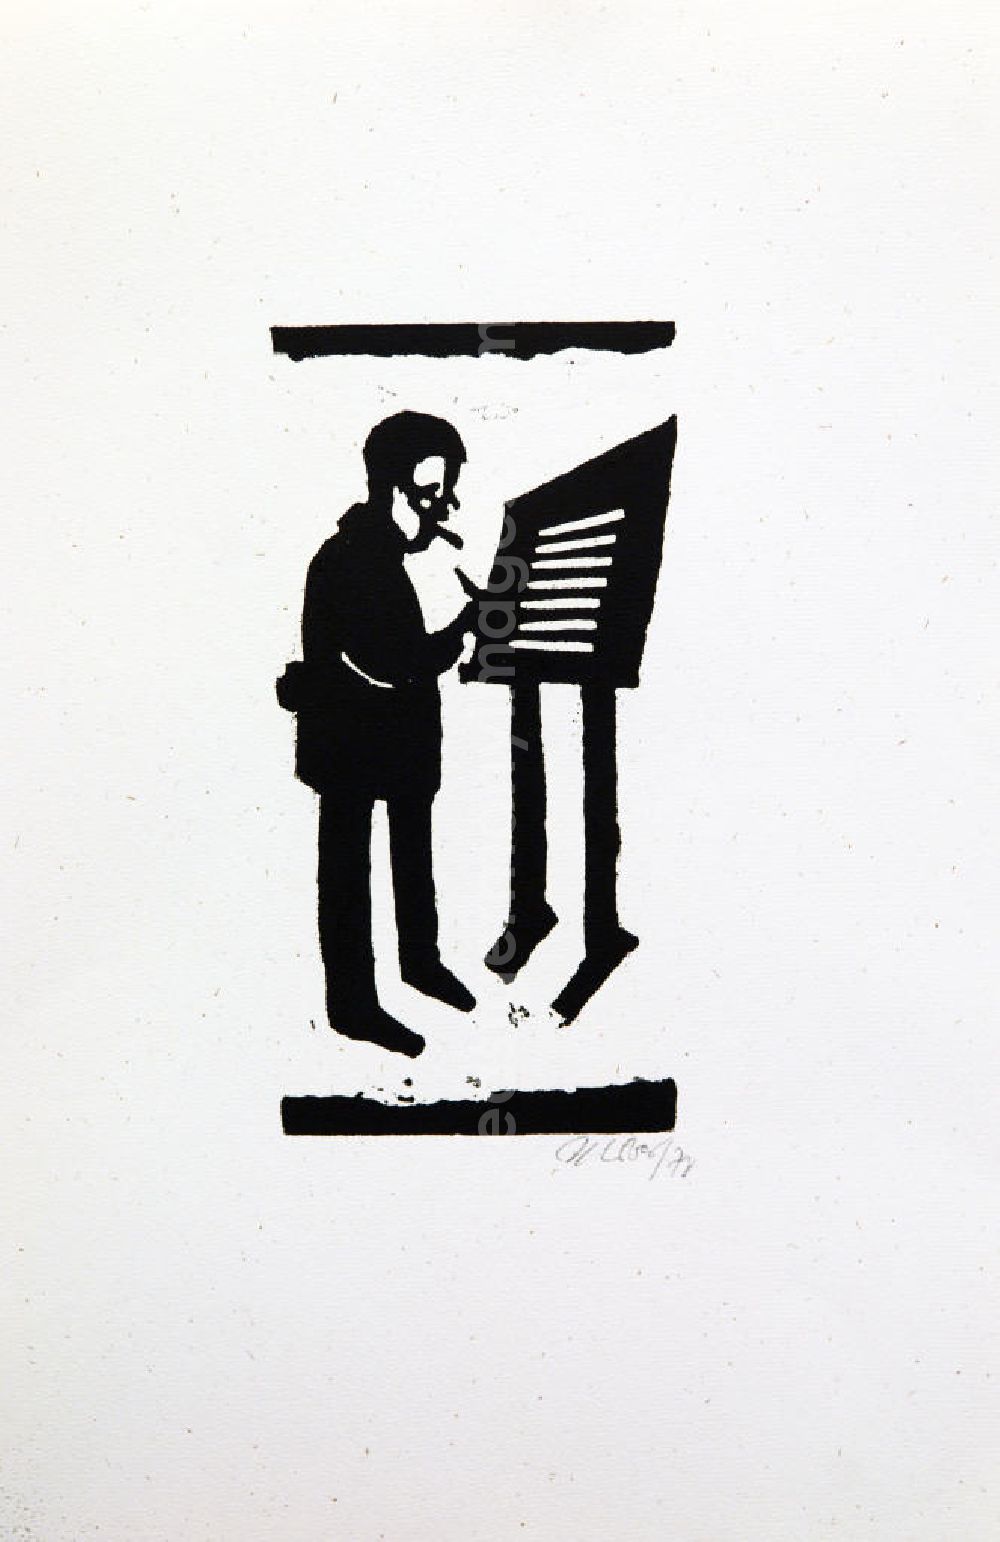 GDR image archive: Berlin - Grafik von Herbert Sandberg über Bertolt Brecht (*10.02.1898 †14.08.1956) aus dem Jahr 1978 als Erinnerung anlässlich seines 80. Geburtstages (Brecht im Stehen beim Schreiben am Pult) Holzschnitt auf handgeschöpftem Bütten 20,5 x1